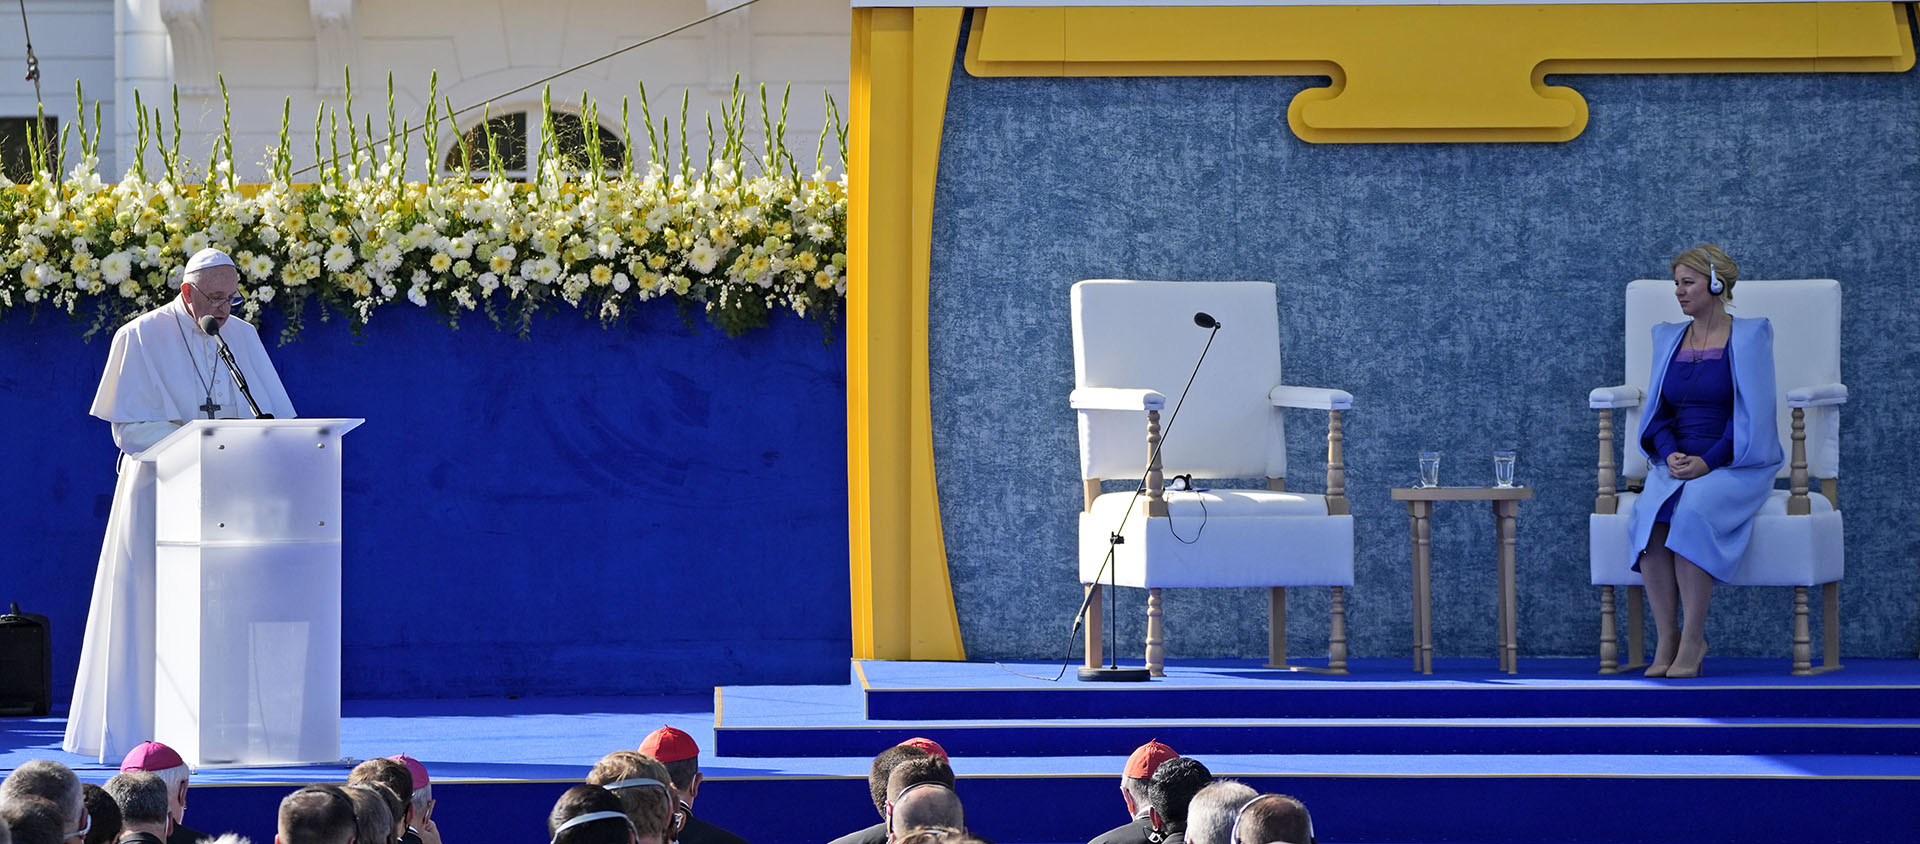 Il faut que la Slovaquie «réaffirme son message d’intégration et de paix", a affirmé le pape lors de son discours | © Keystone